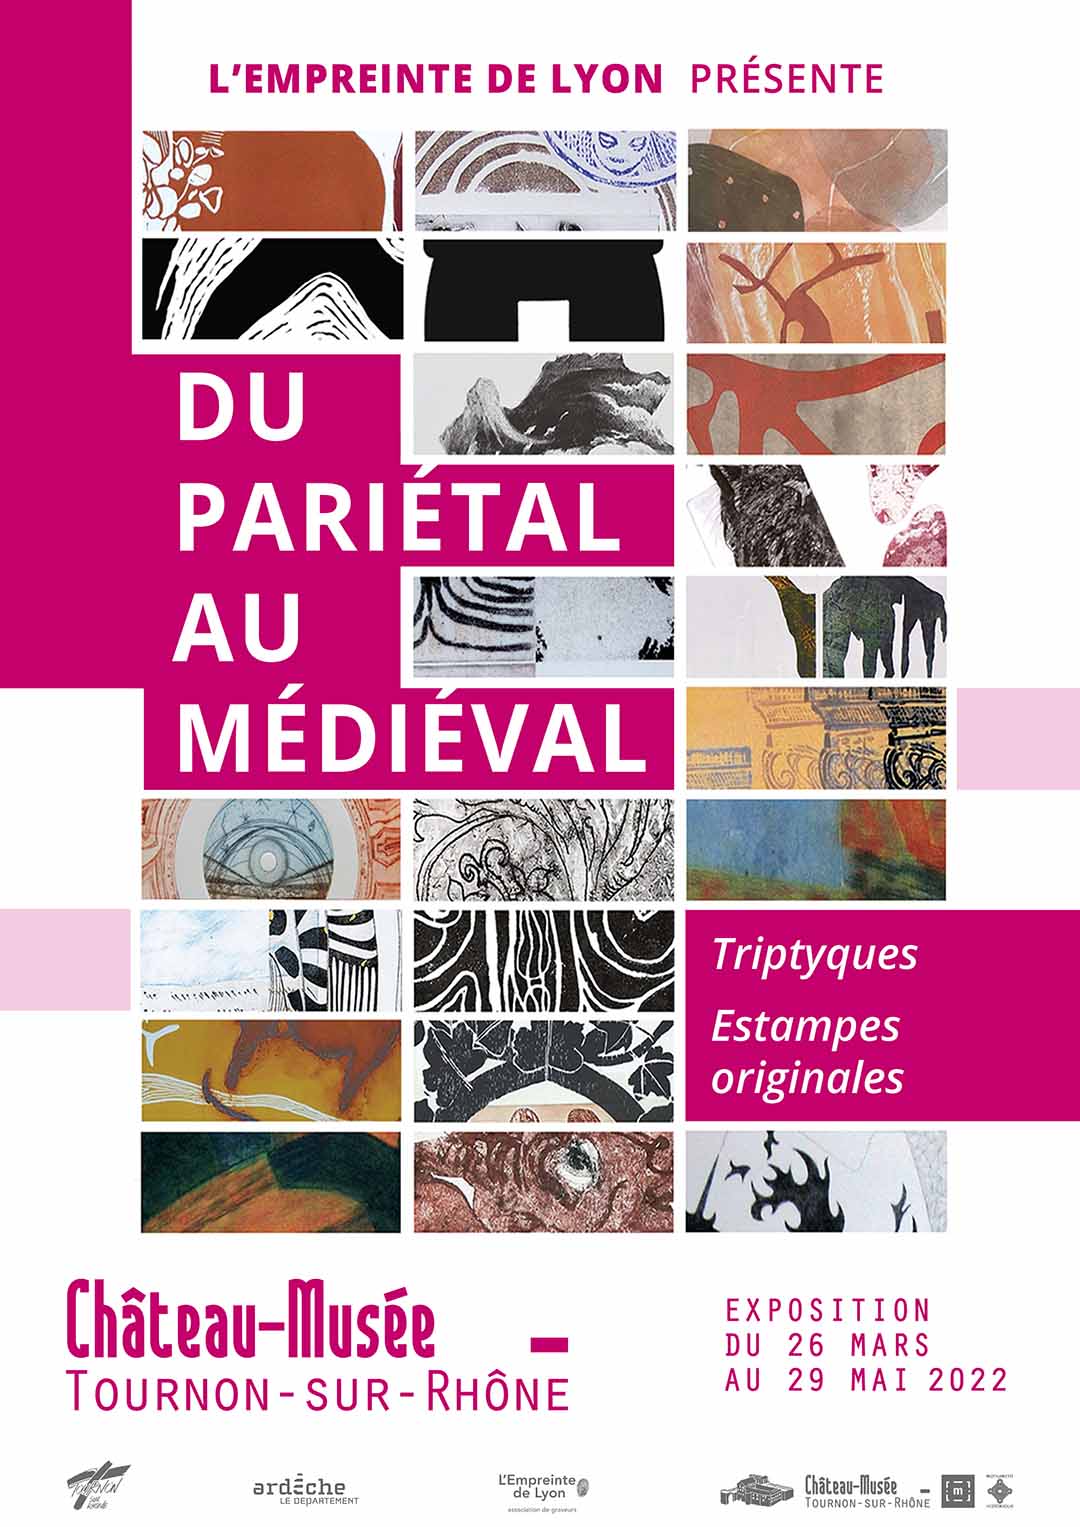 DU PARIÉTAL AU MÉDIÉVAL. Exposition du 26 mars au 29 mai 2022 au Château-musée de Tournon-sur-Rhône.